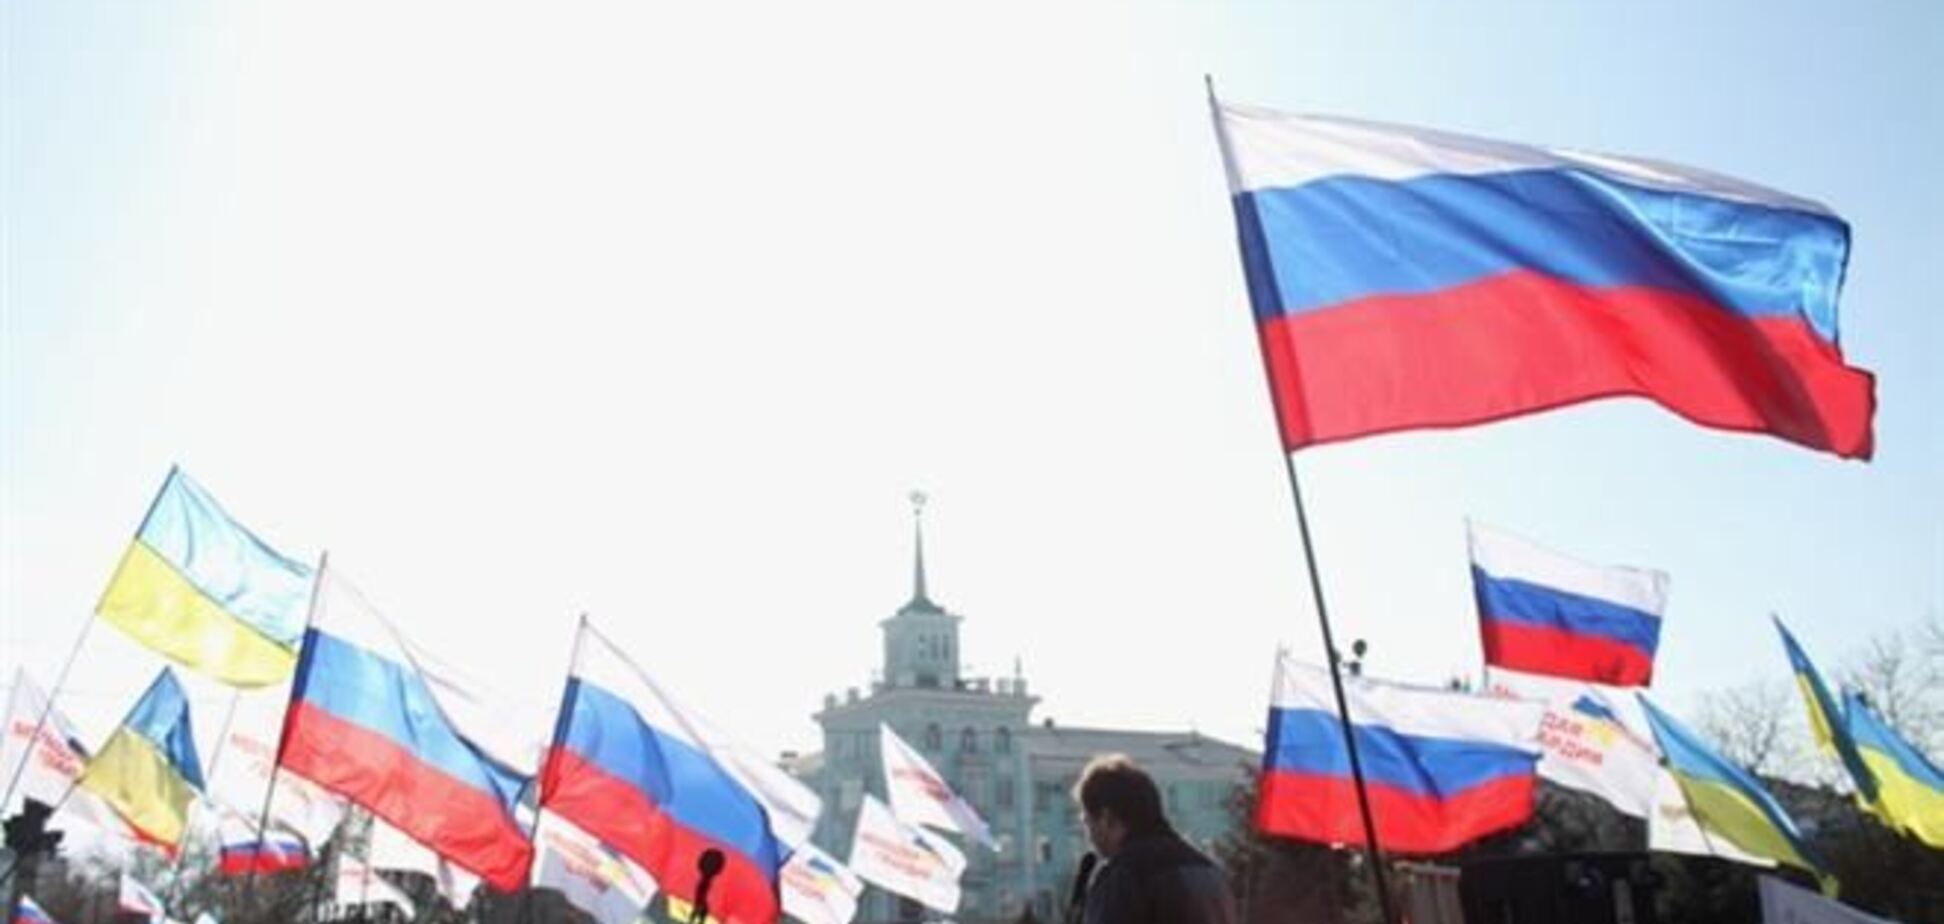 Появилось видео, на котором провокаторы из РФ устанавливали российские флаги в Луганске